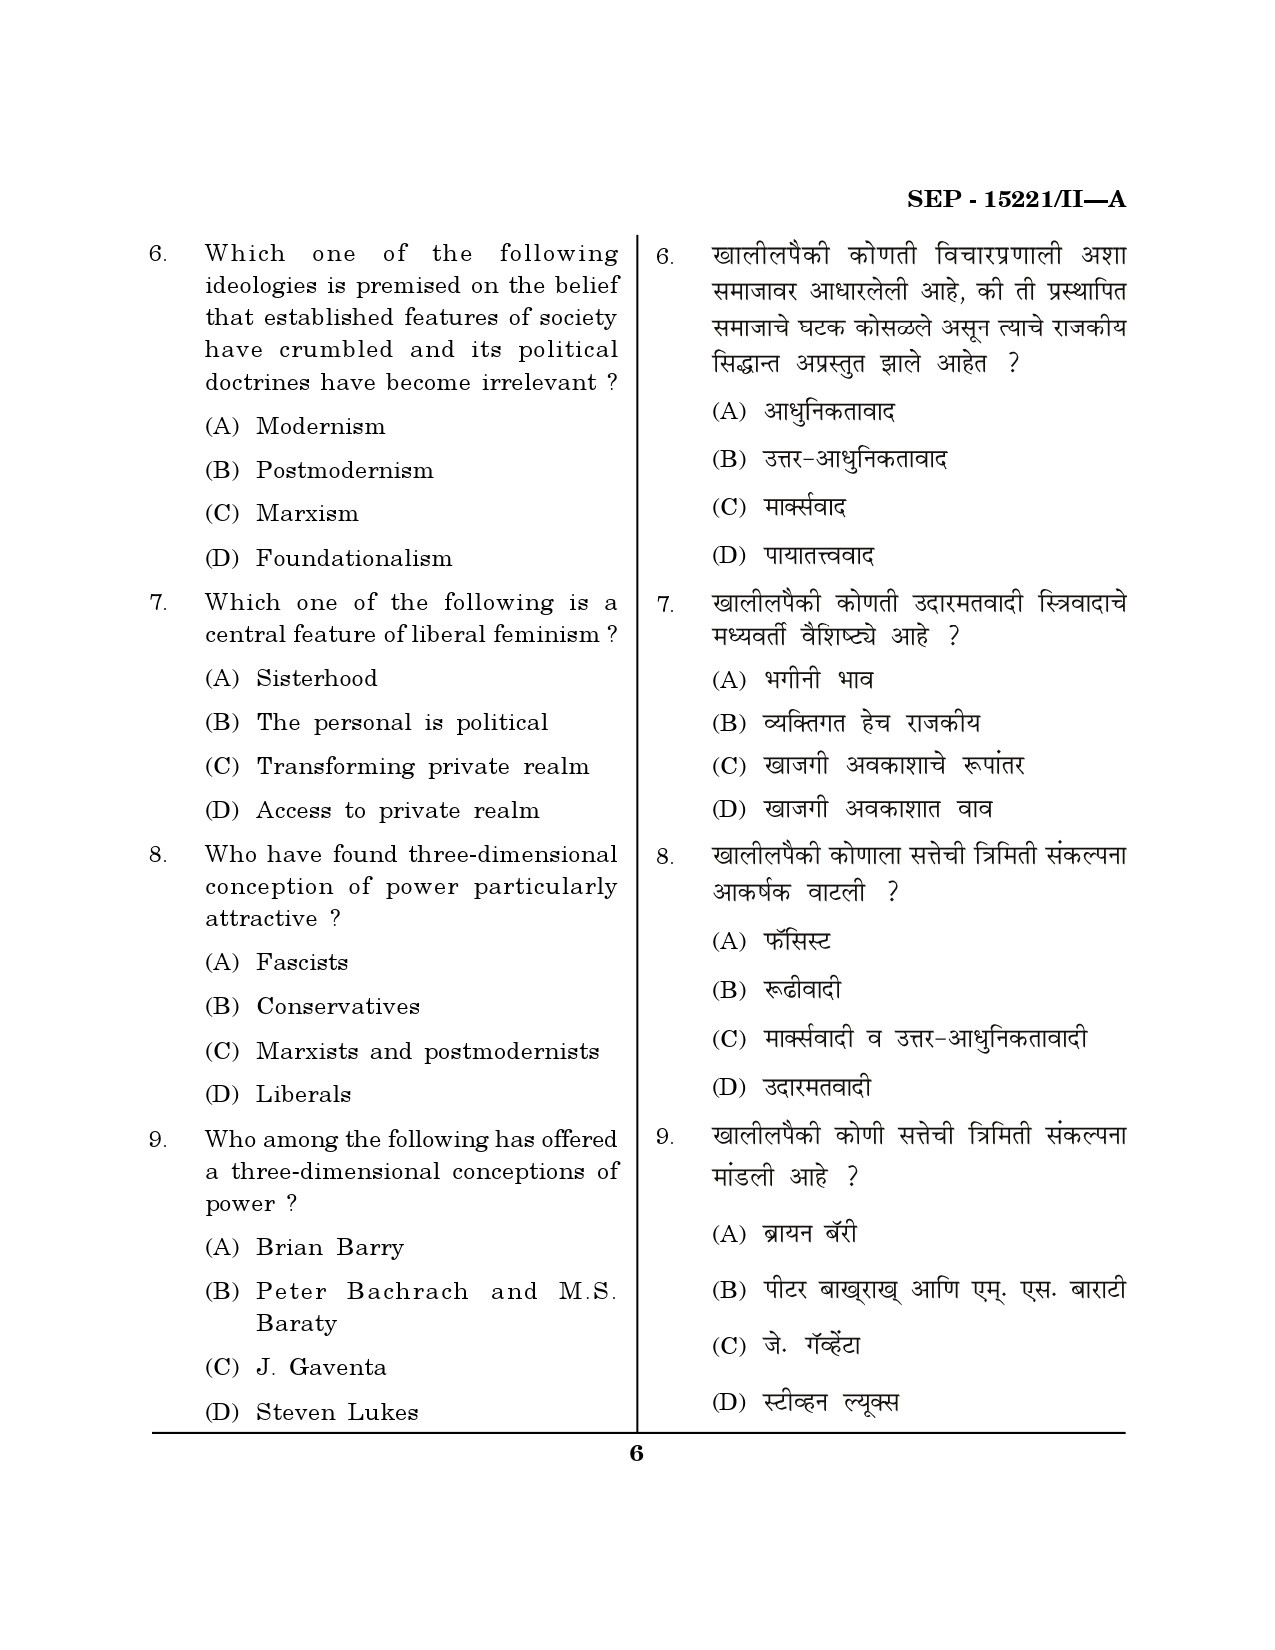 Maharashtra SET Political Science Exam Question Paper September 2021 5